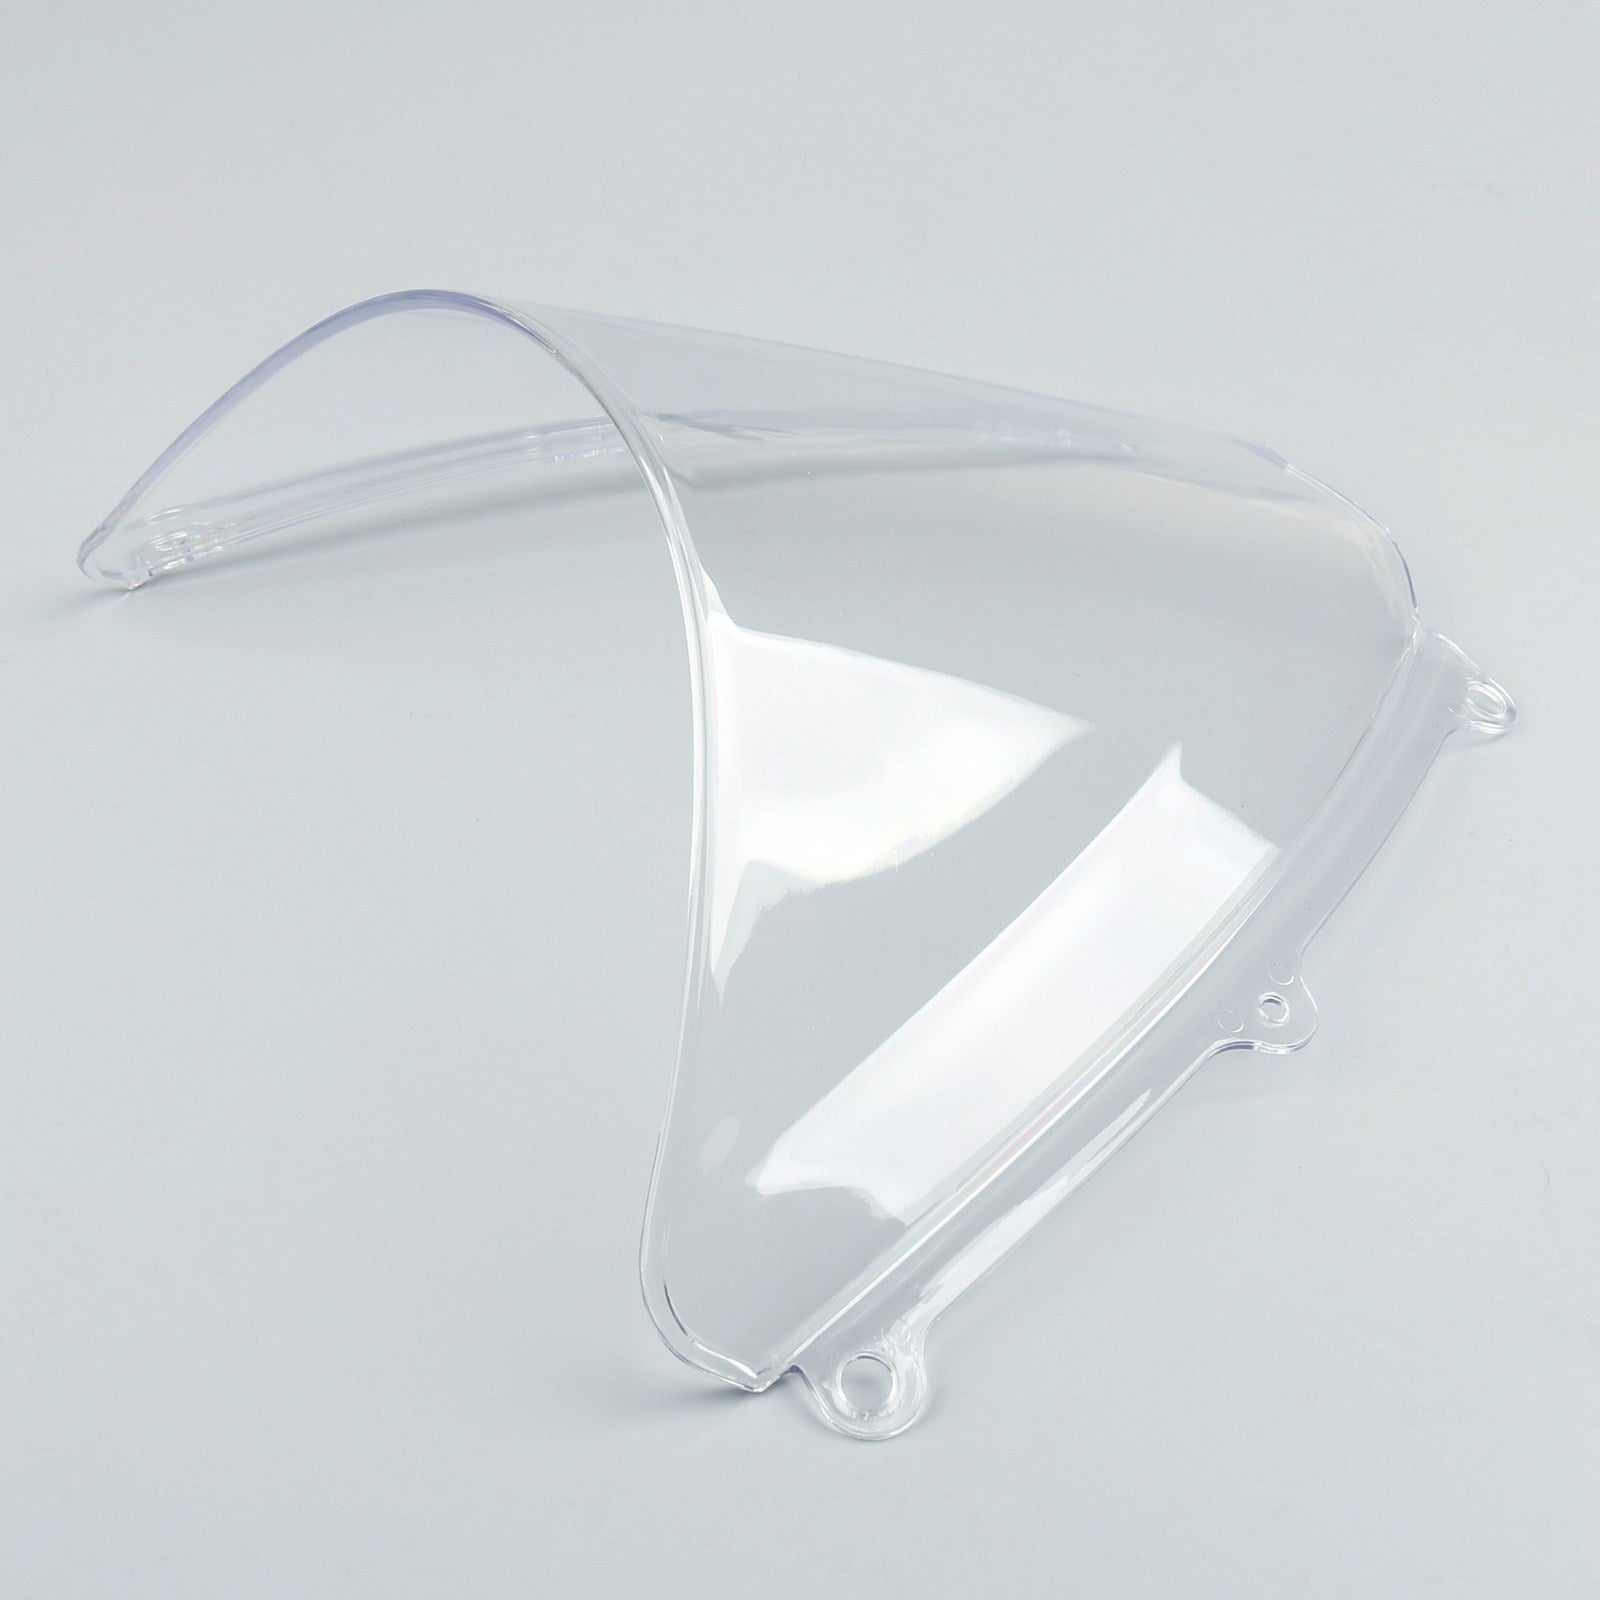 Parabrezza WindScreen Double Bubble per Suzuki GSXR 1000 2007-2008 K7 Trasparente